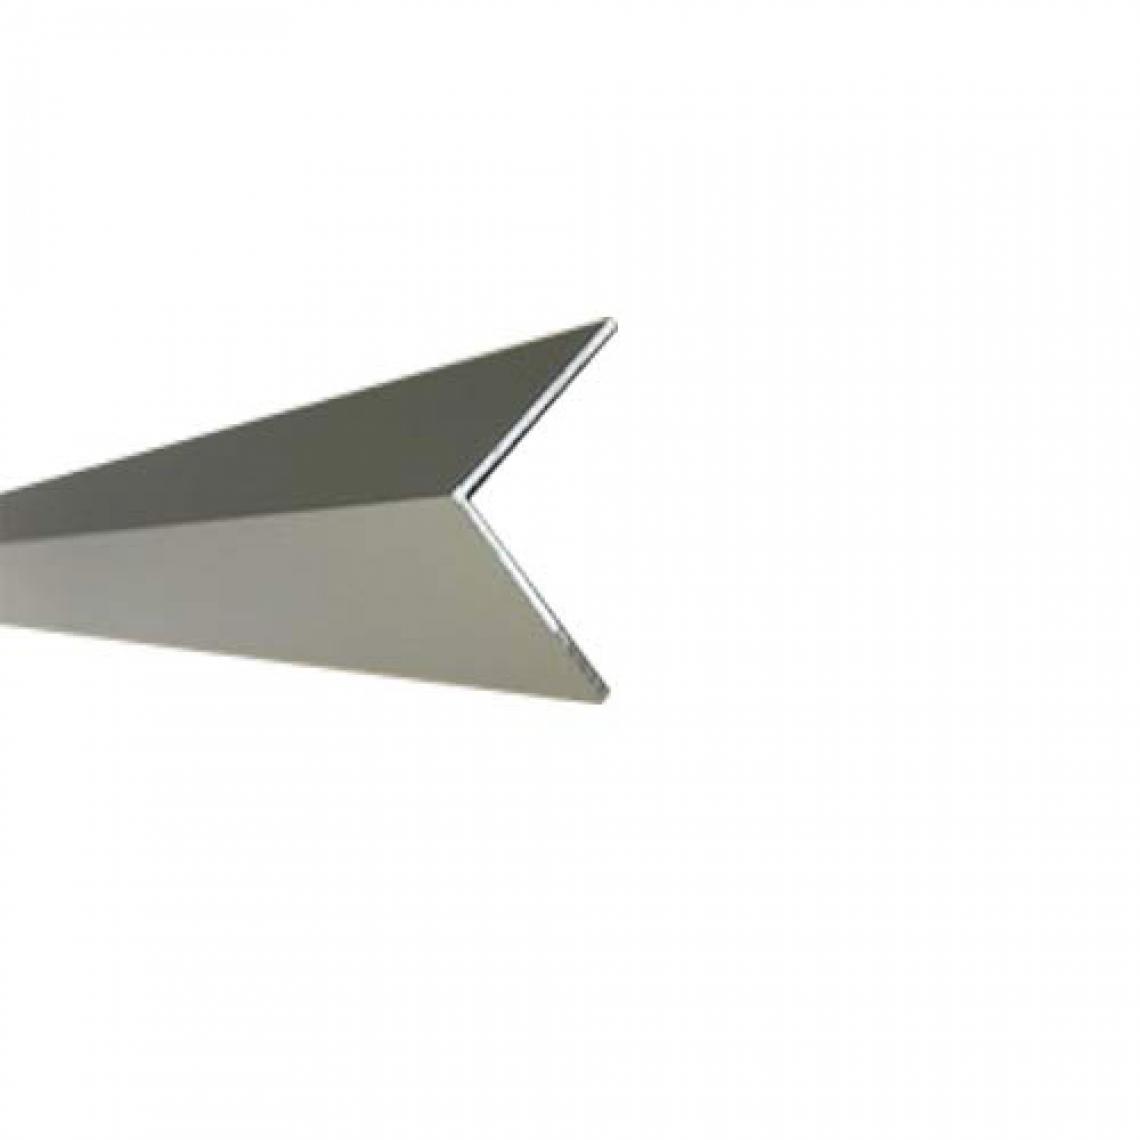 Homewell - Cornière en aluminium 25x25x1.3, satiné argent, 1m - Équerre étagère